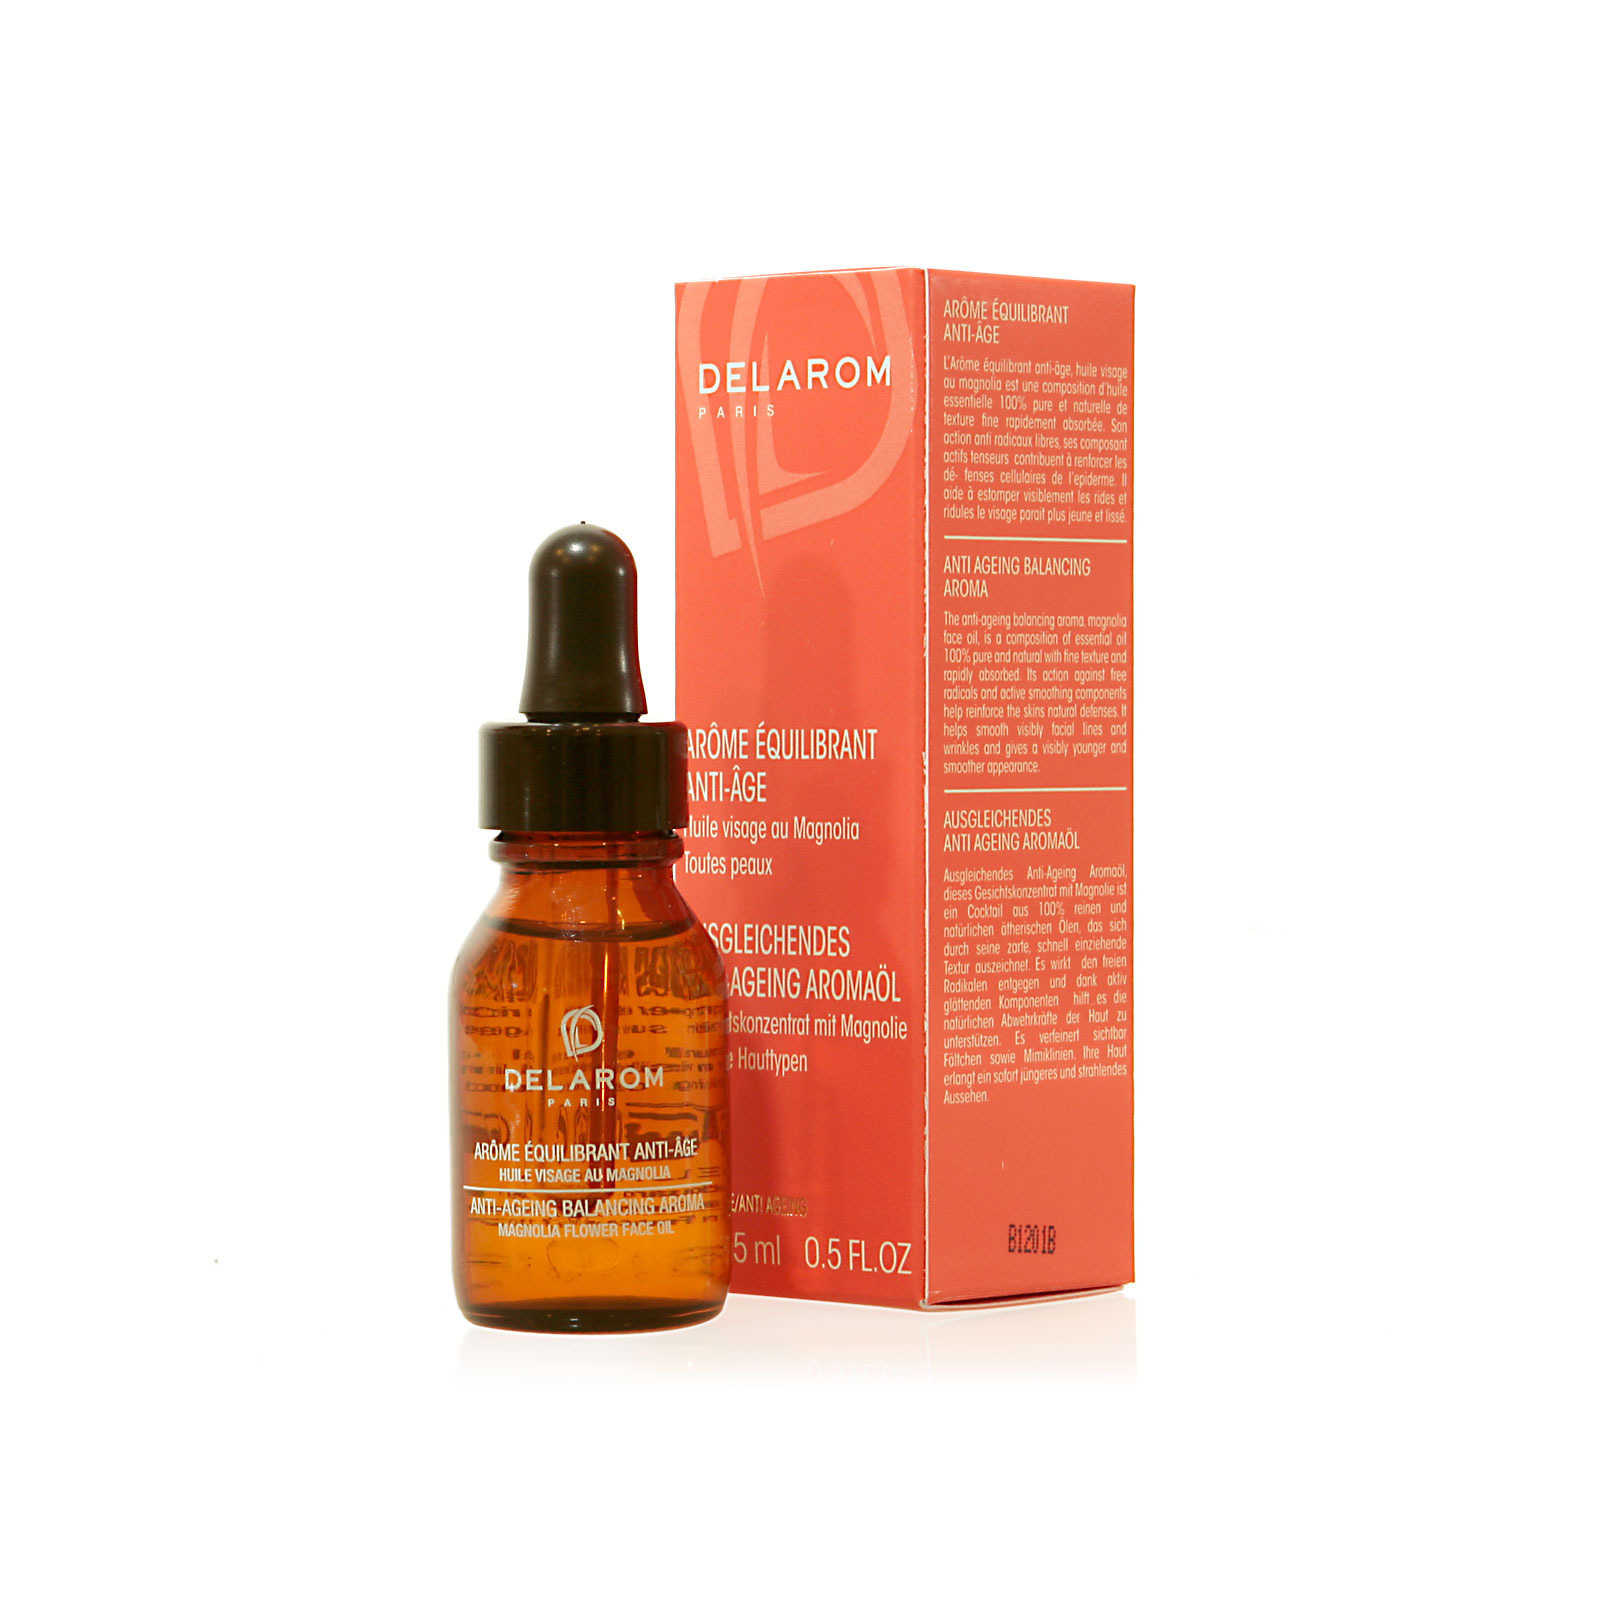 Delarom - Olio essenziale antirughe - Aroma Equilibrante - Anti-age